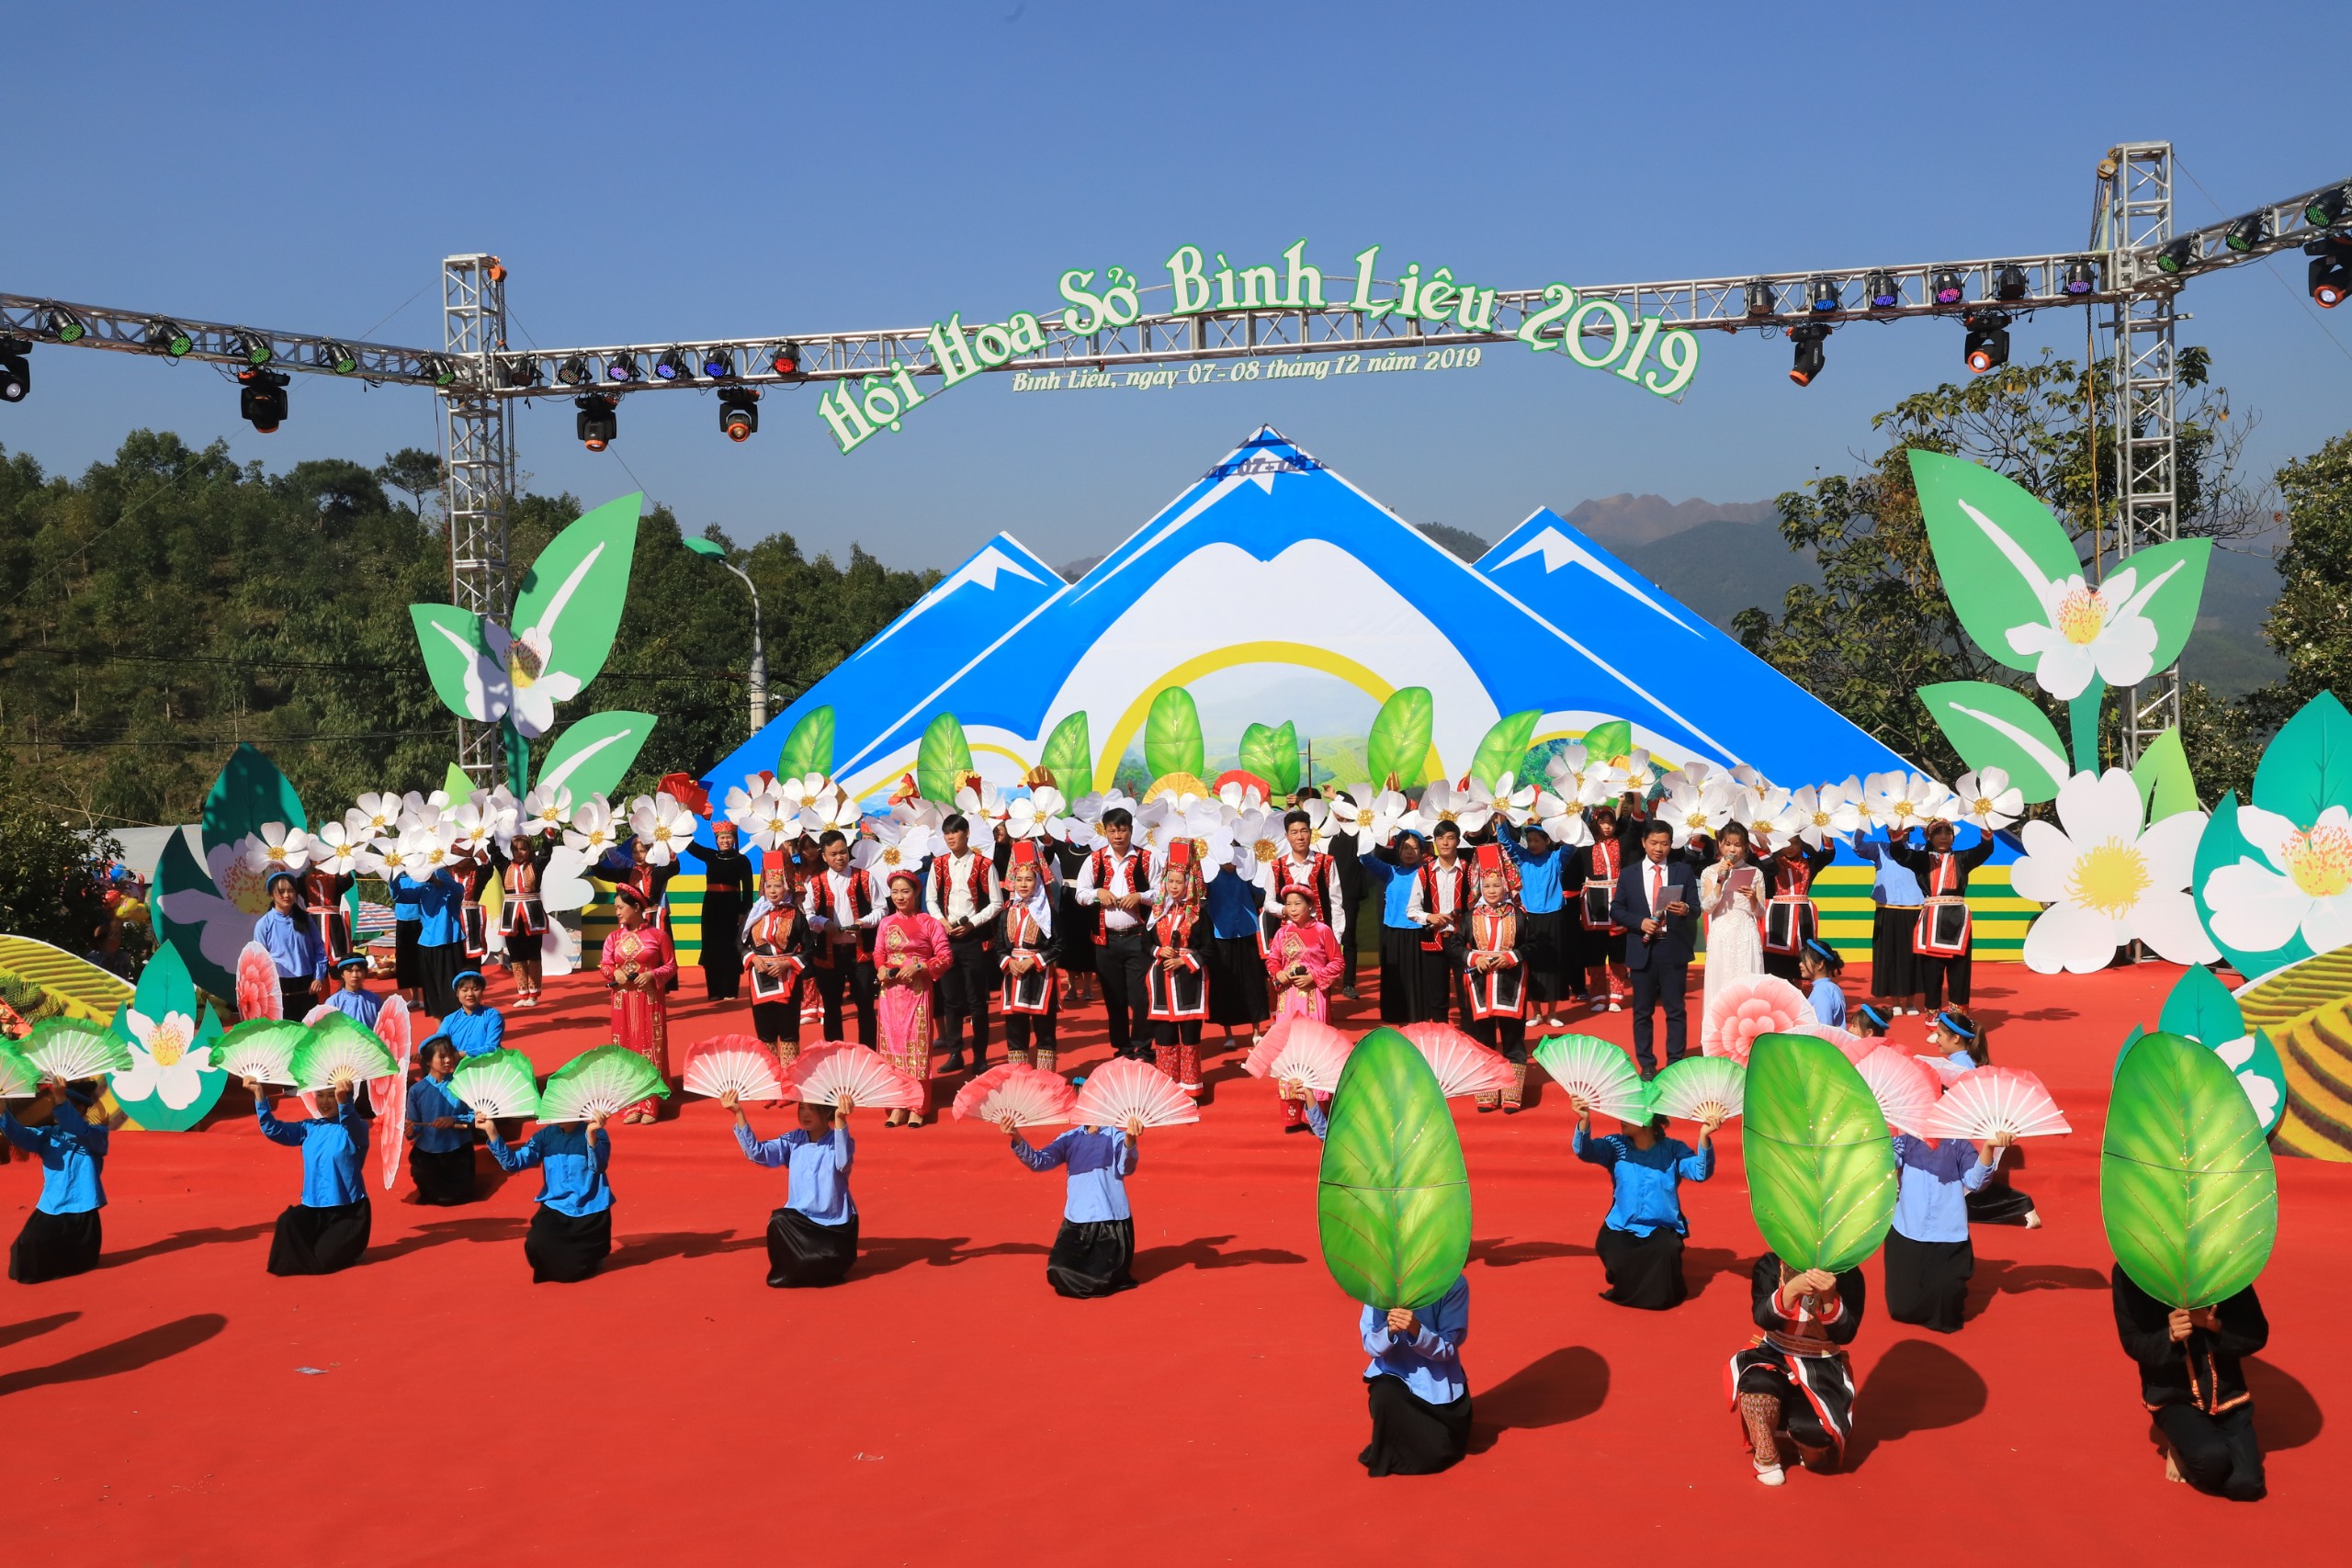 Hội hoa Sở Bình Liêu lần đầu tiên được tổ chức vào tháng 12-2015, là một hoạt động văn hóa tiêu biểu của nhân dân các dân tộc vùng cao Bình Liêu. 